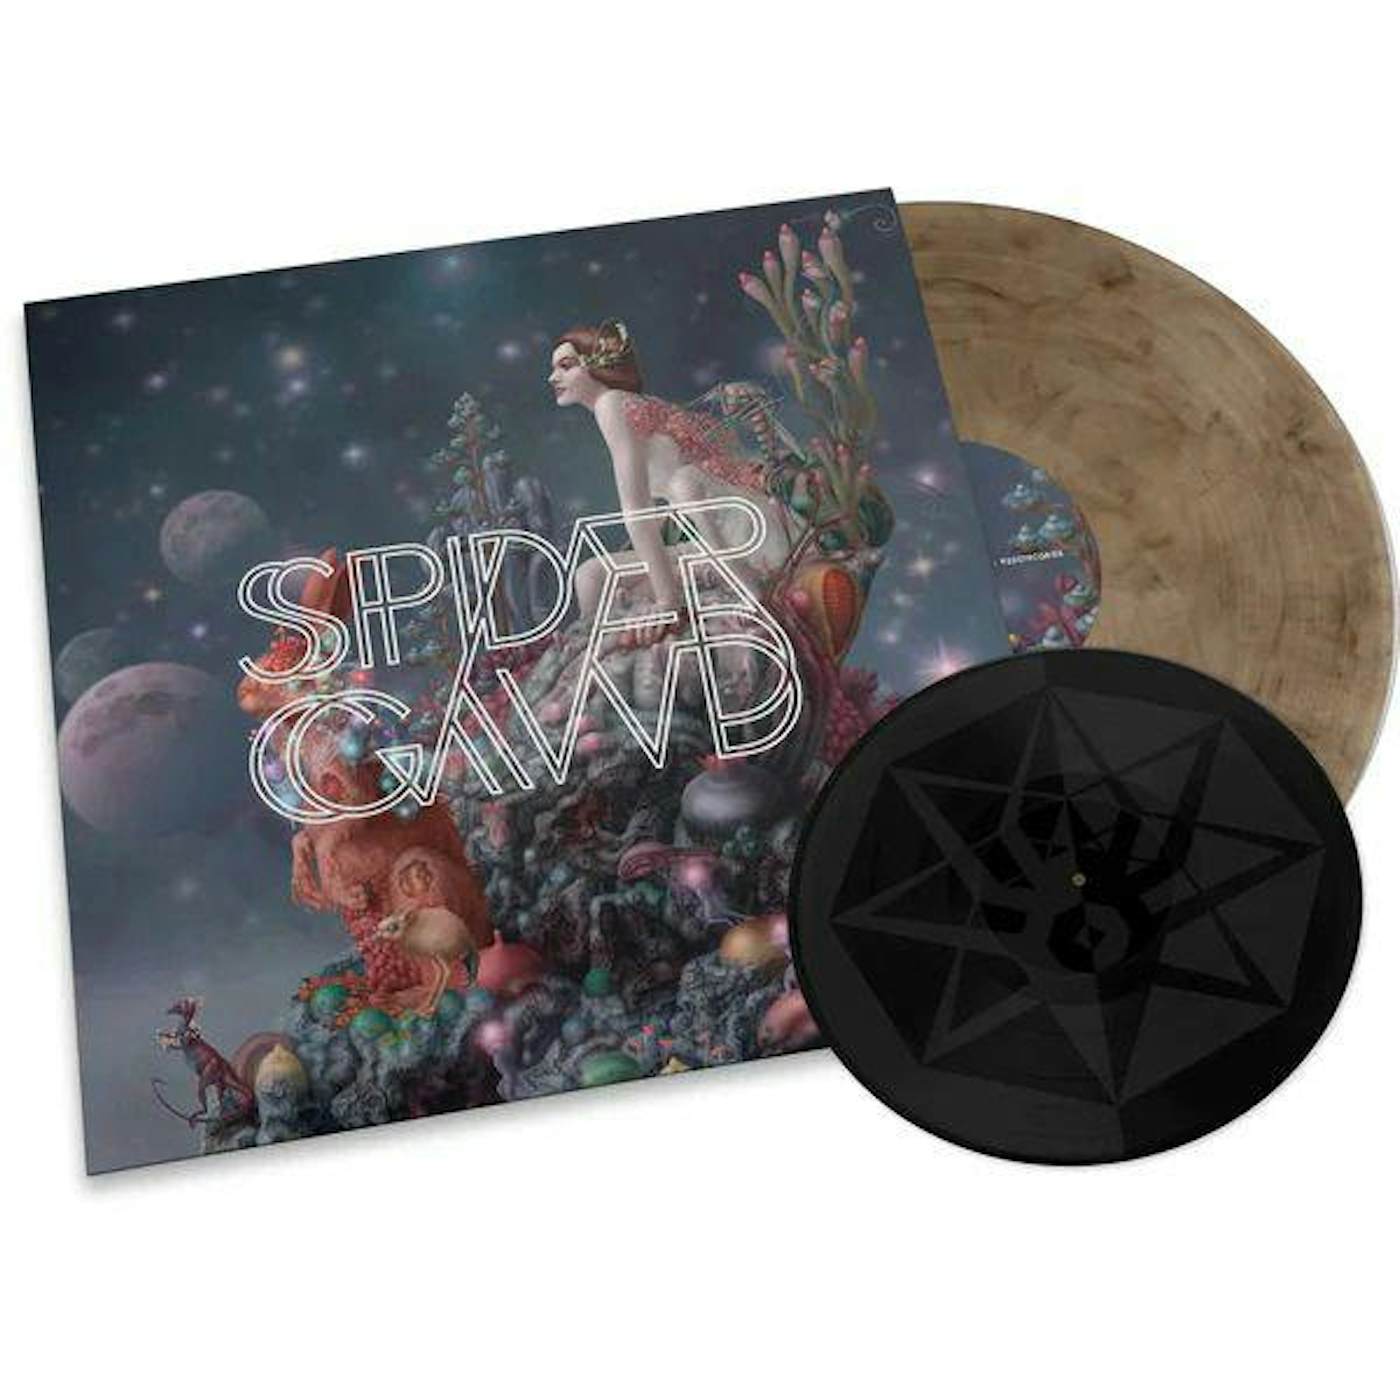 Spidergawd VII (BLACK & SMOKEY VINYL/CD/7 INCH) Vinyl Record